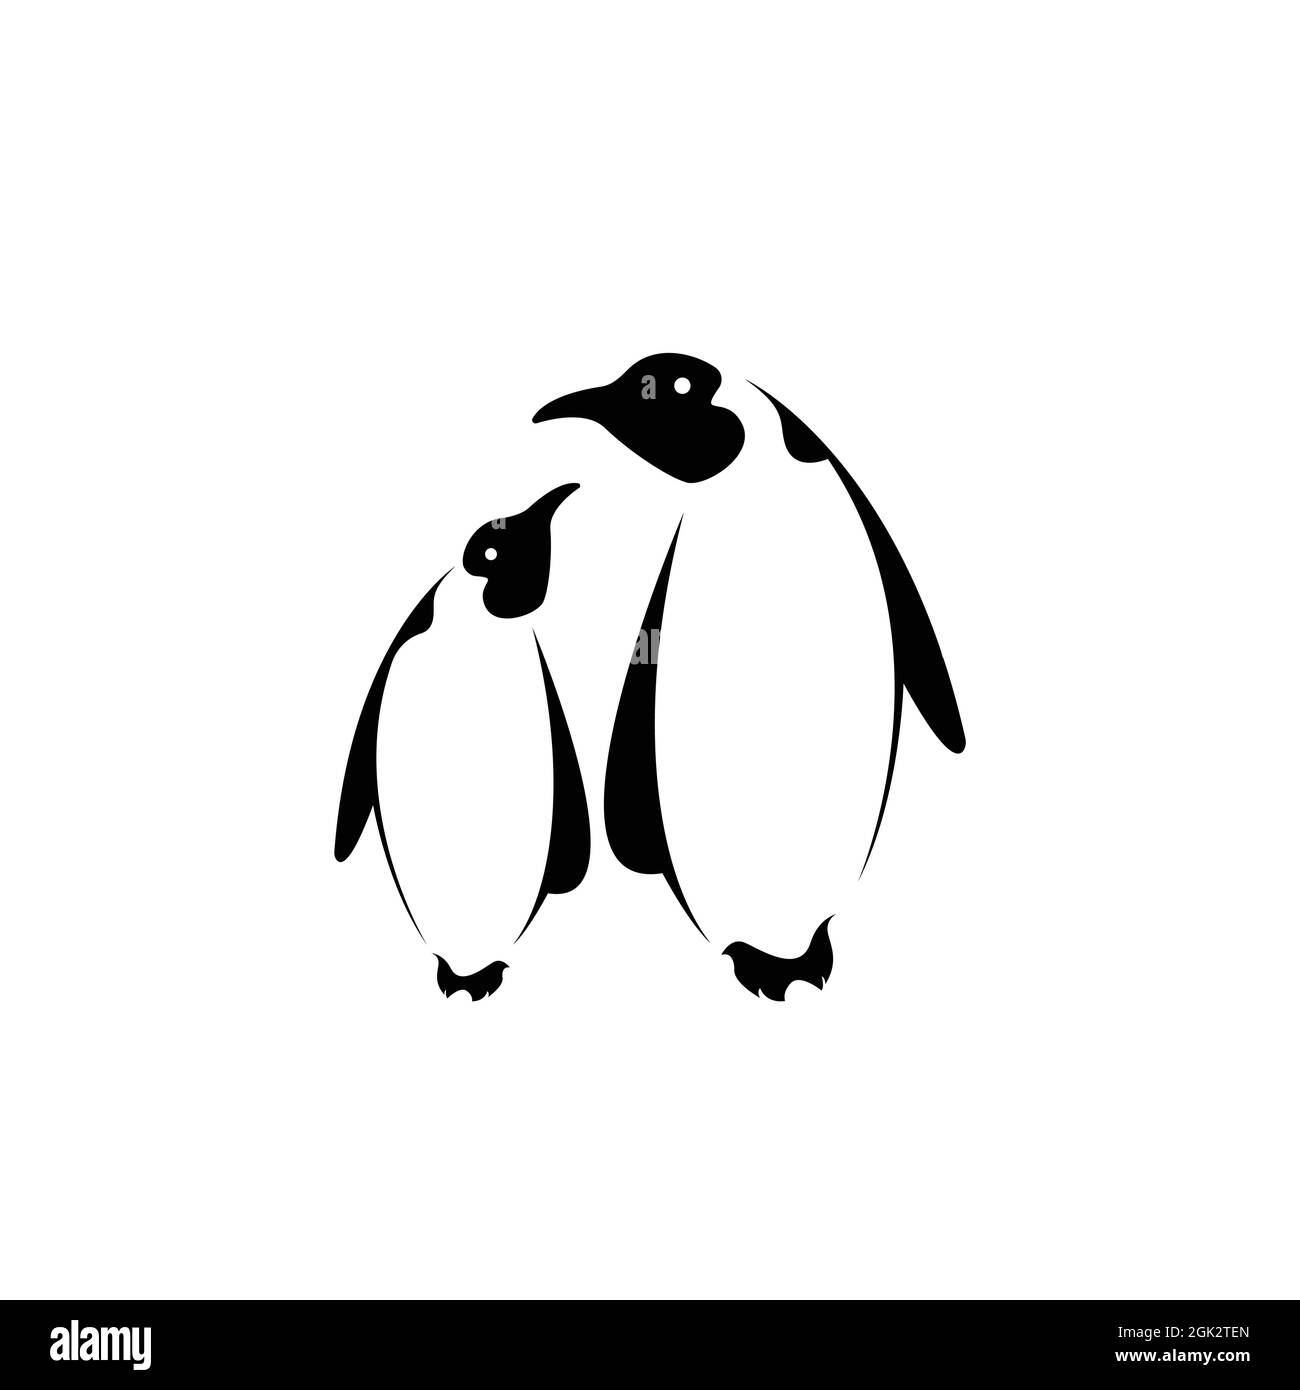 Vektor von zwei Pinguin-Design auf weißem Hintergrund. Leicht editierbare Vektorgrafik mit Ebenen. Wilde Tiere. Polartiere. Stock Vektor